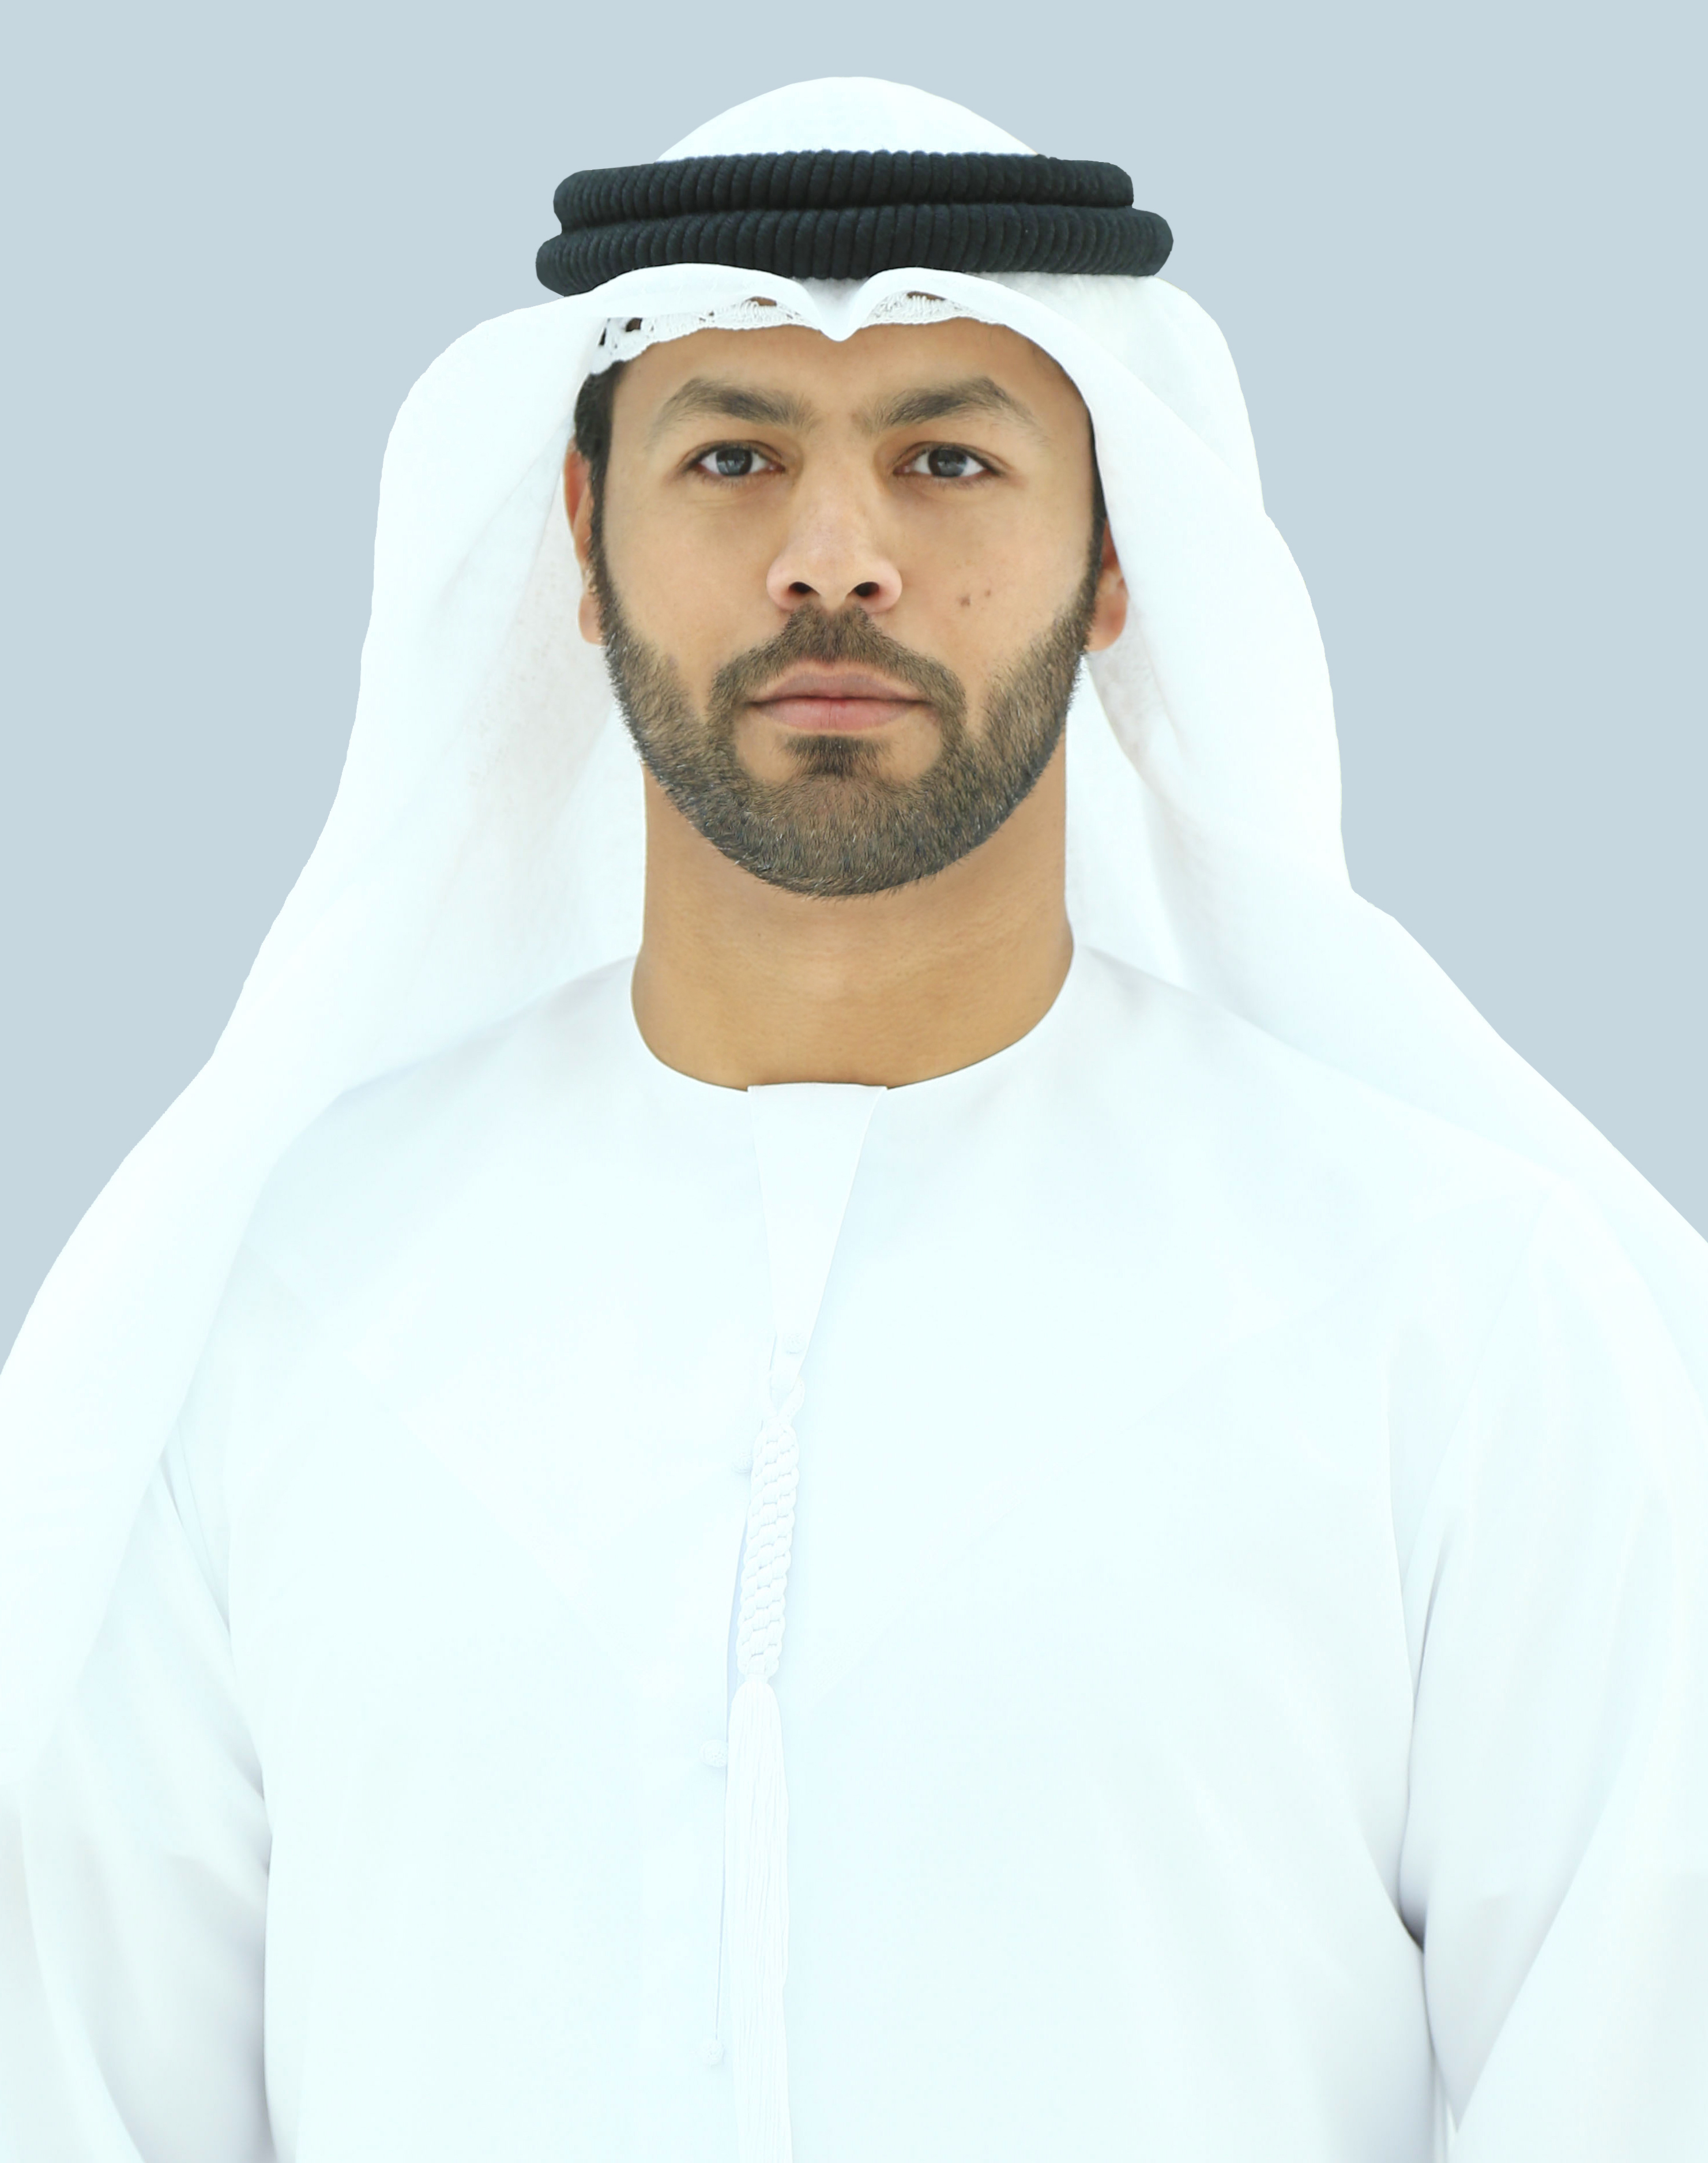 سالم عمر سالم ، مدير المنطقة الحرة SPC